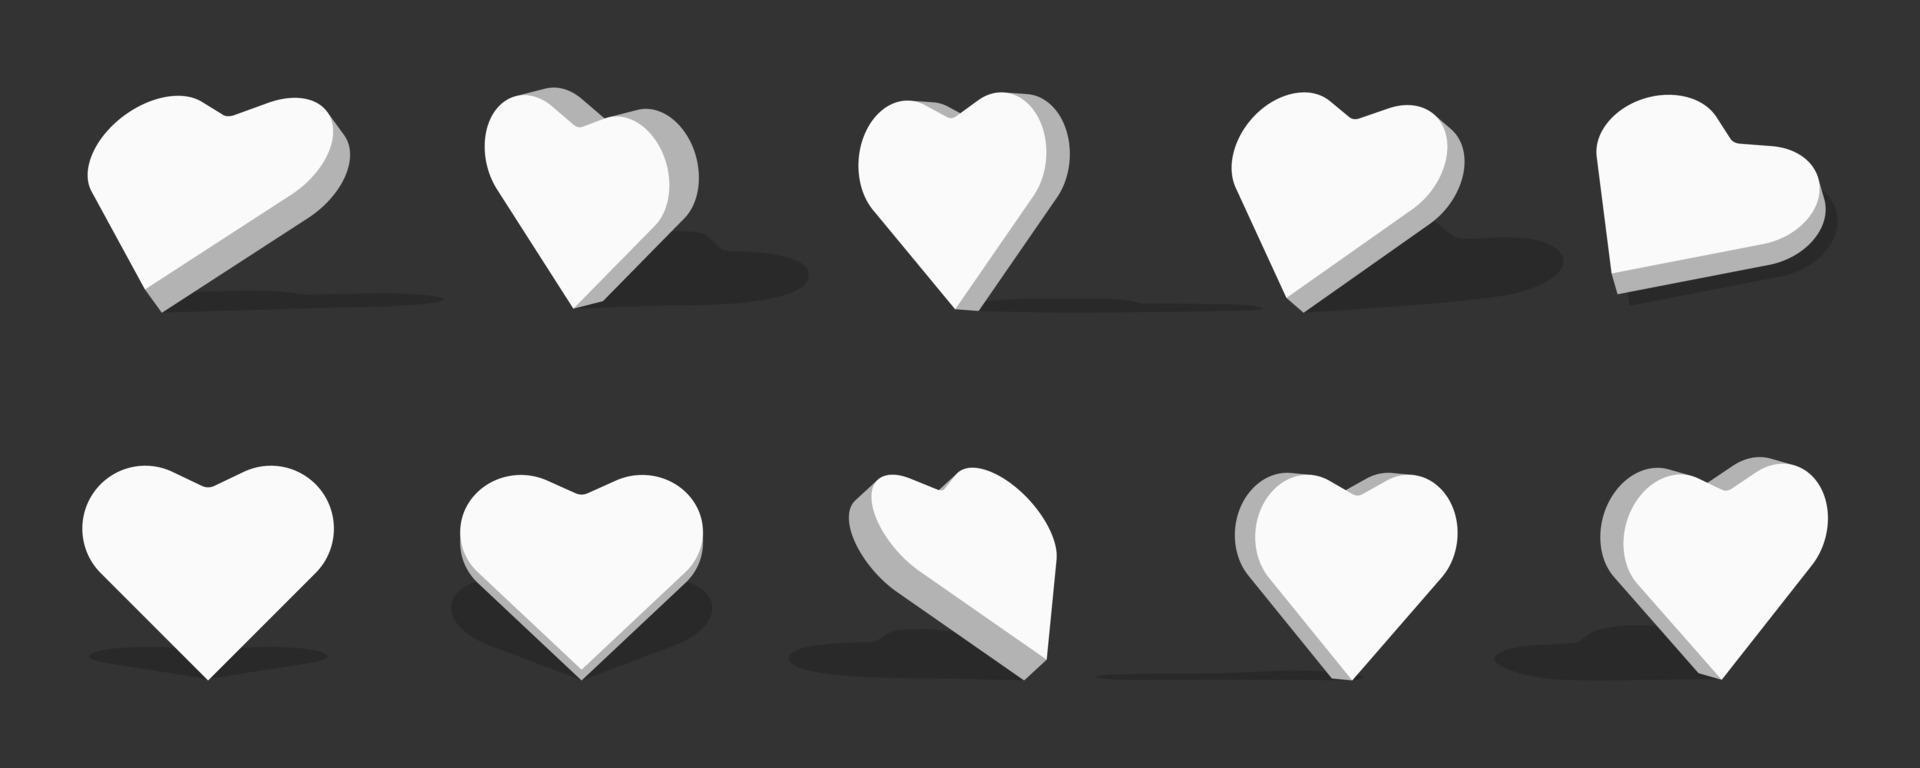 Ilustración de icono 3d de corazón blanco con diferentes vistas y ángulos vector